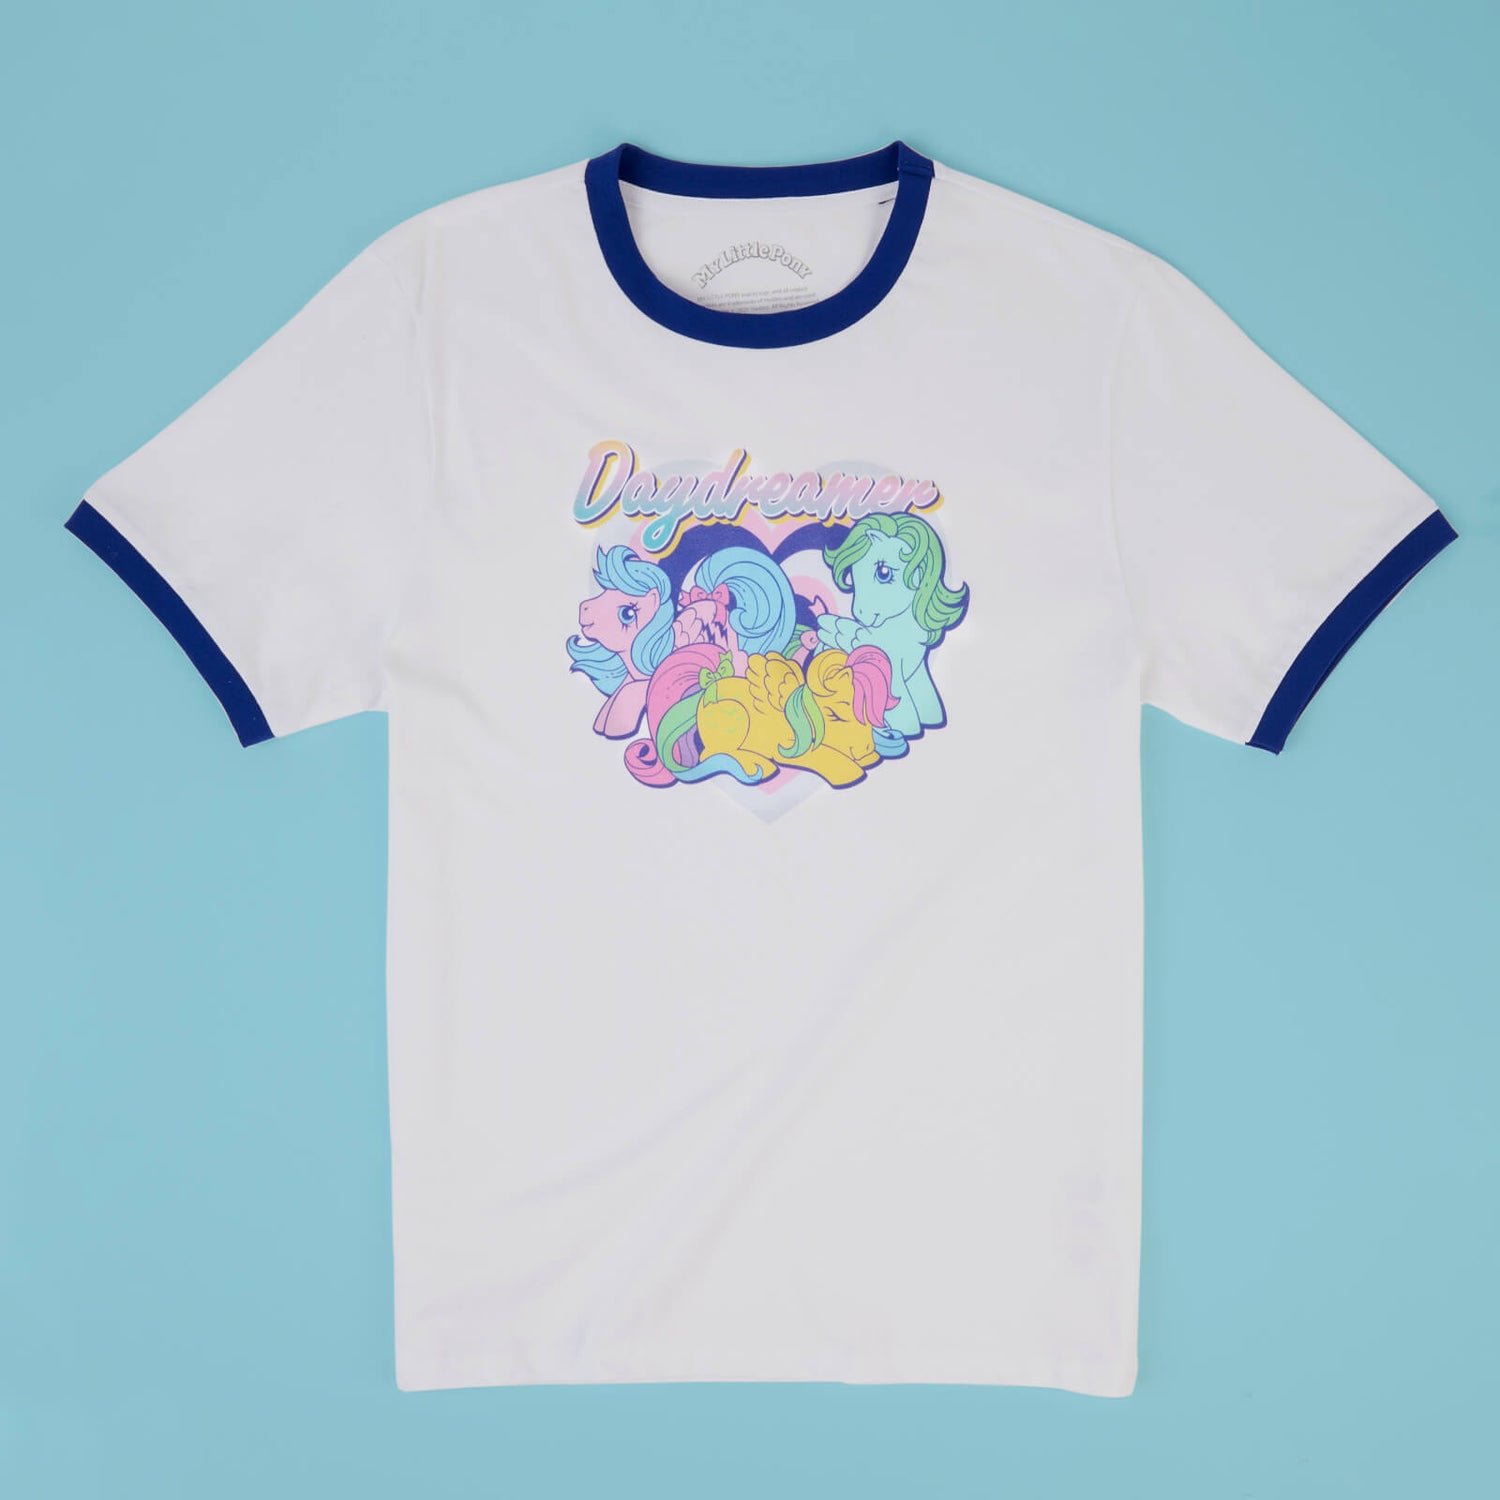 My Little Pony Daydreamer Unisex Ringer T-Shirt - White/Navy